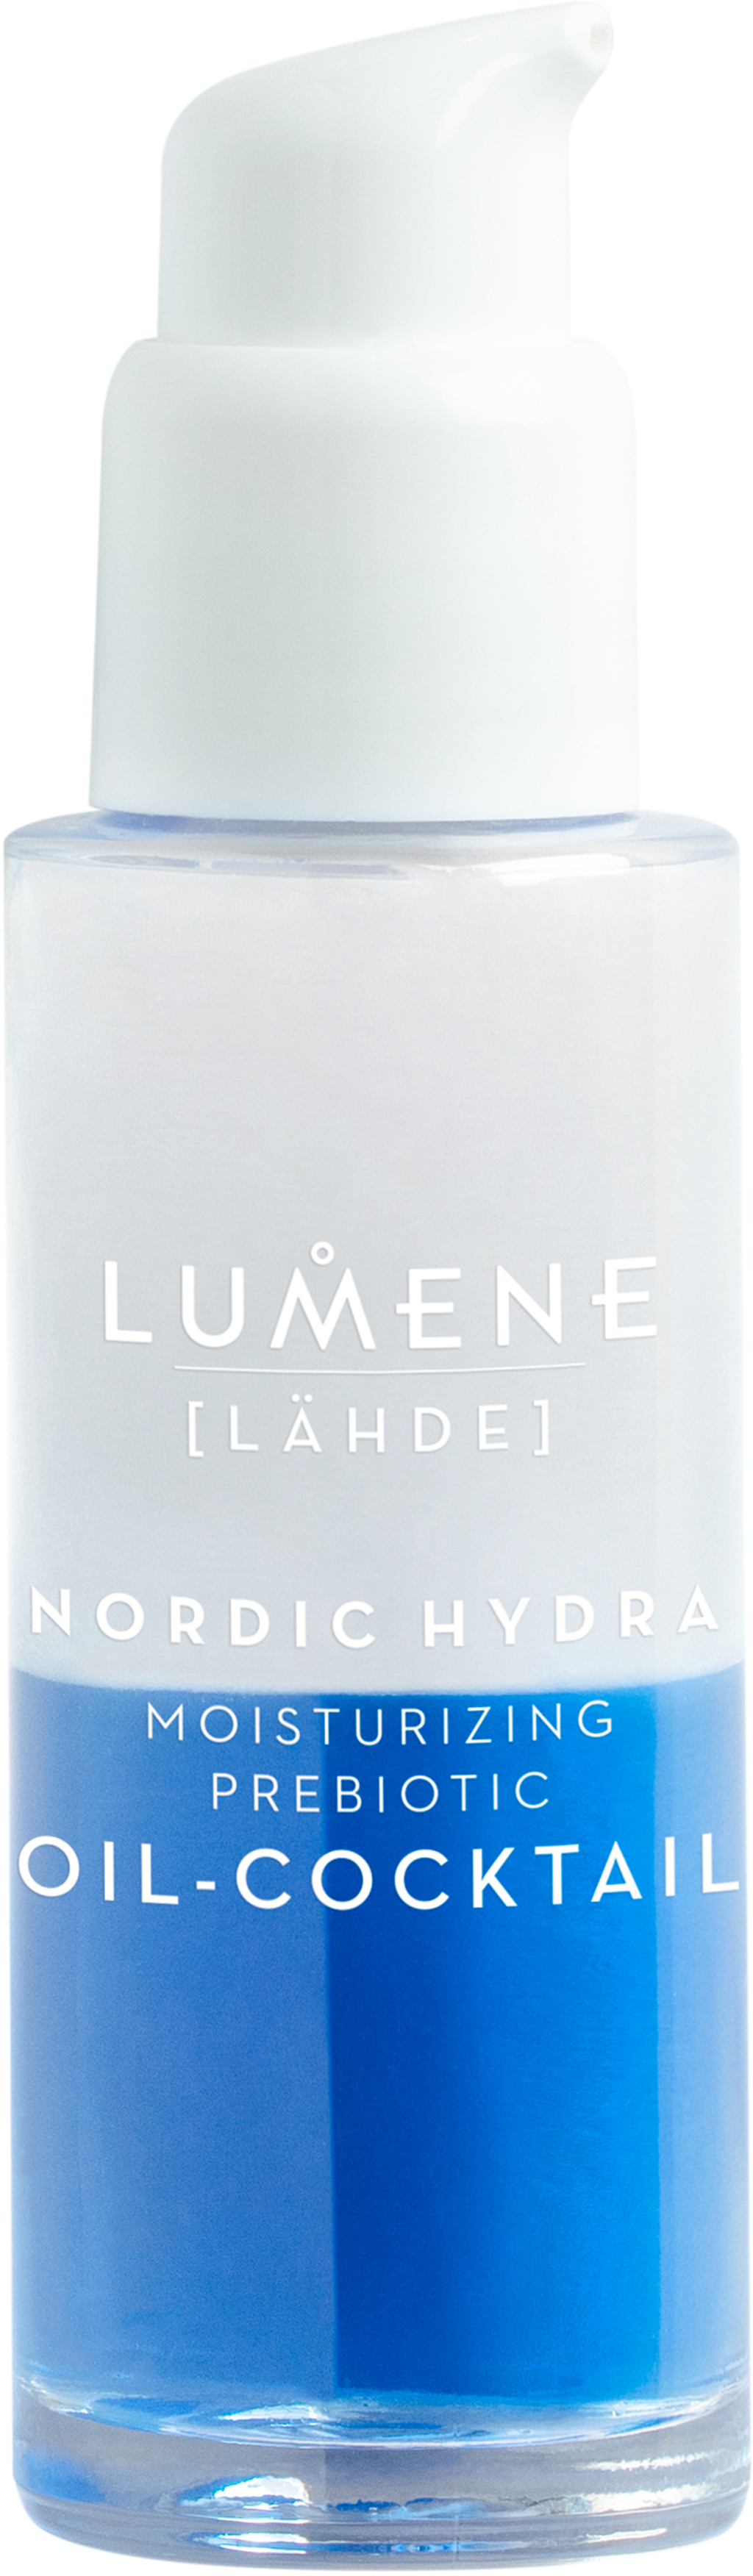 Что такое lumene nordic hydra как укрепить корни конопли